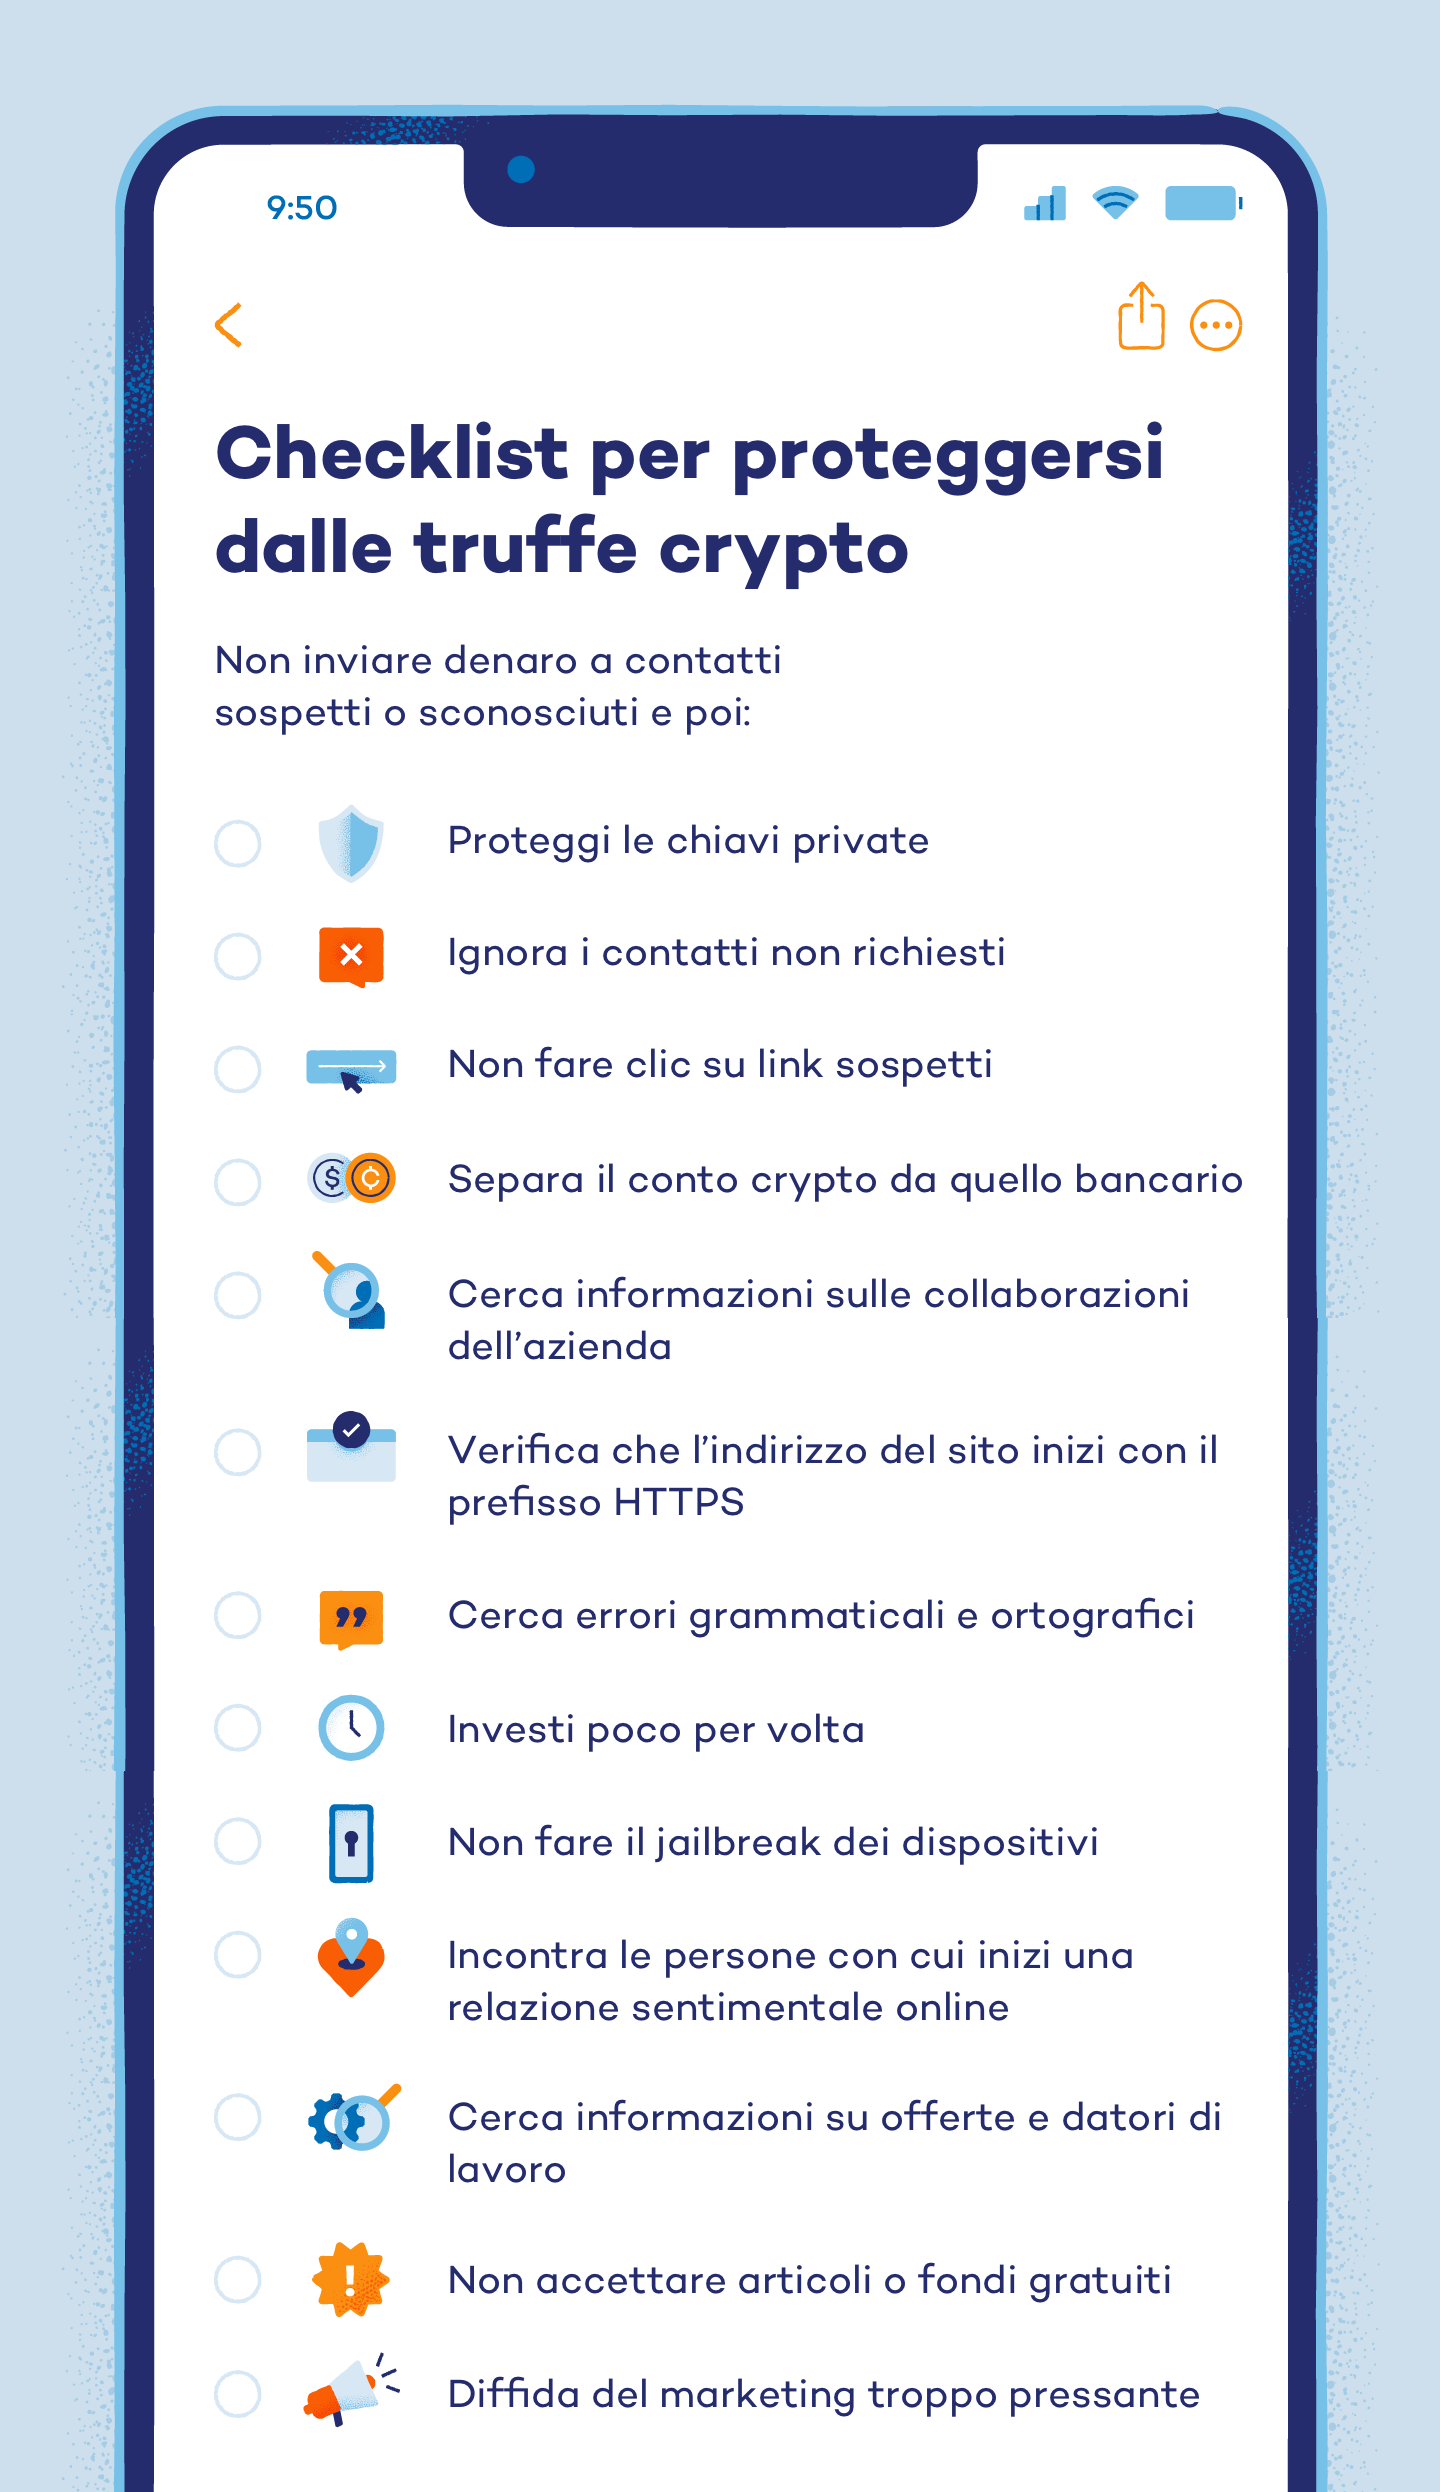 Checklist per proteggersi dalle truffe crypto